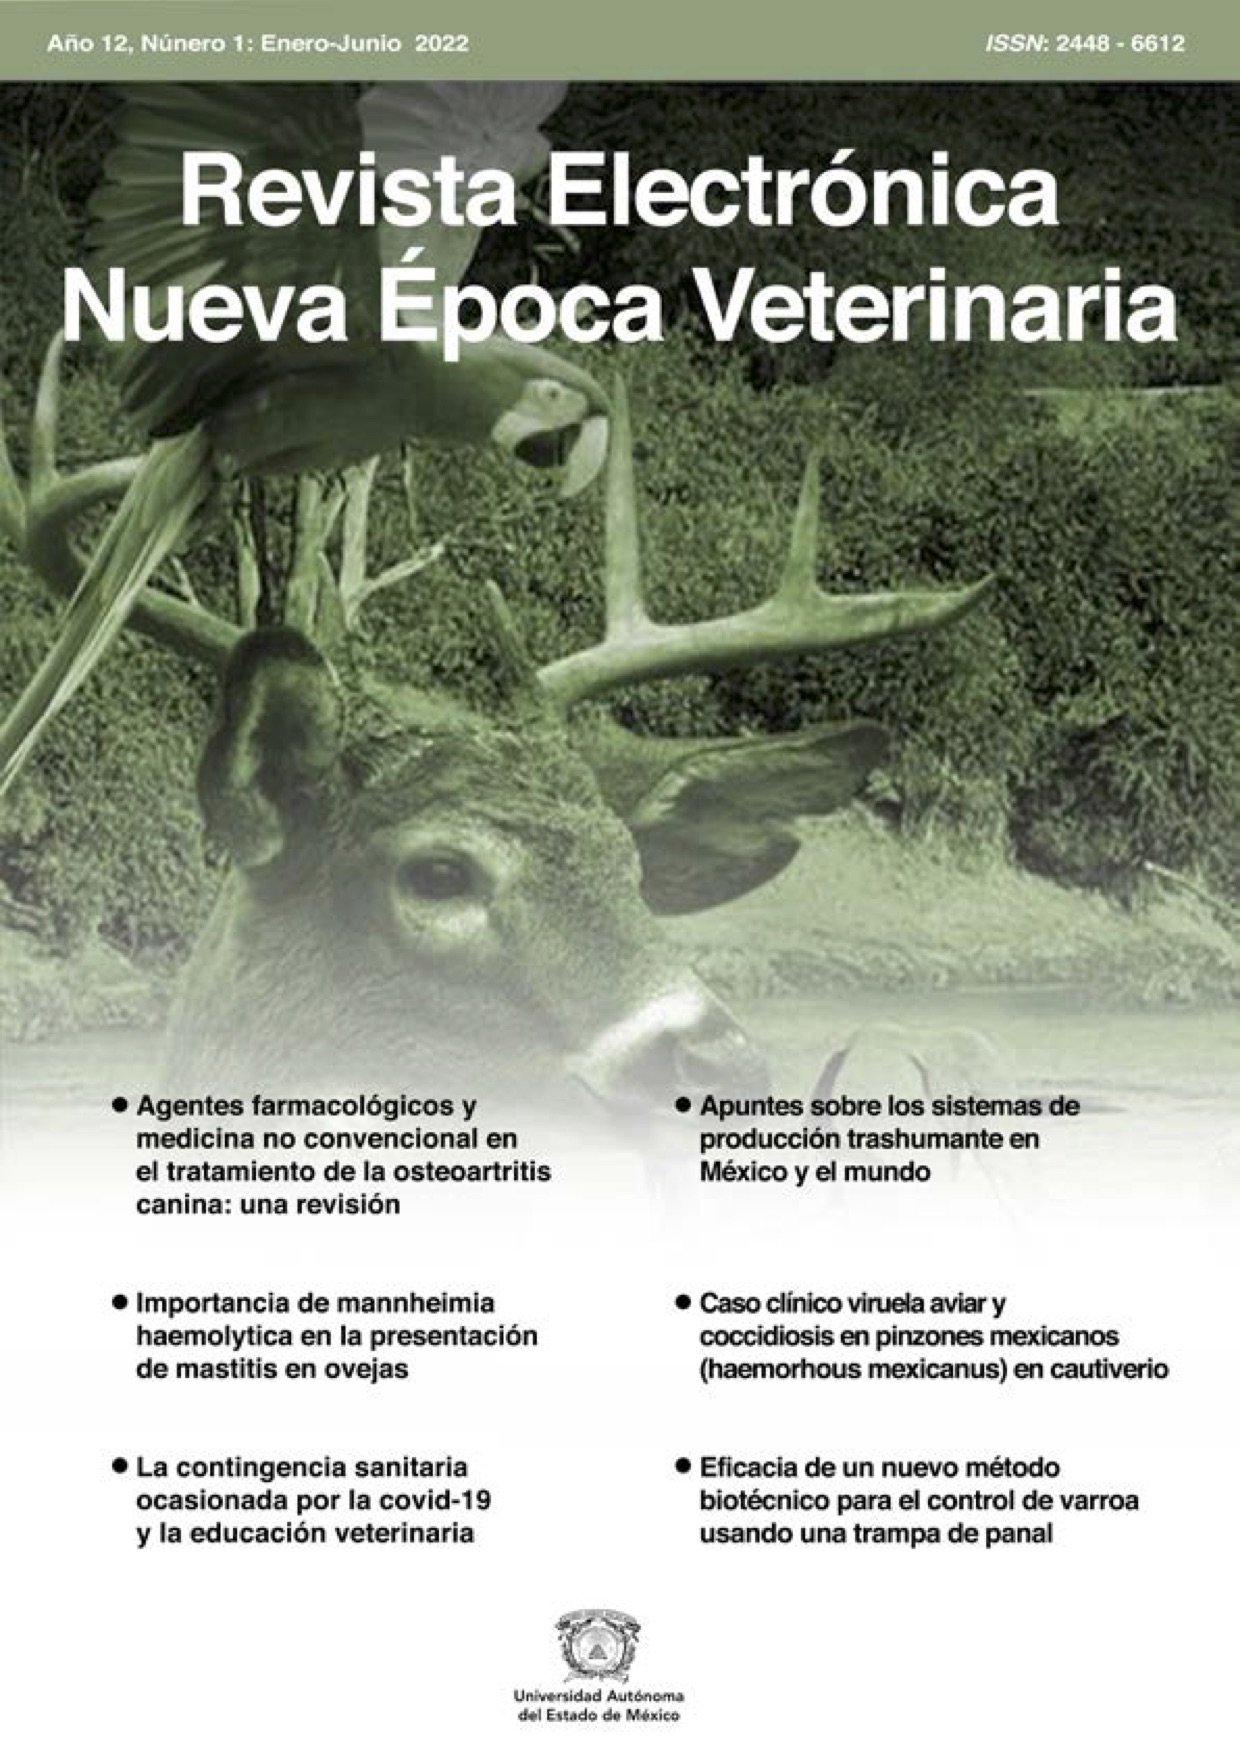 Revista Electrónica Nueva Época Veterinaria, Año 12 - No. 1, Marzo 2022